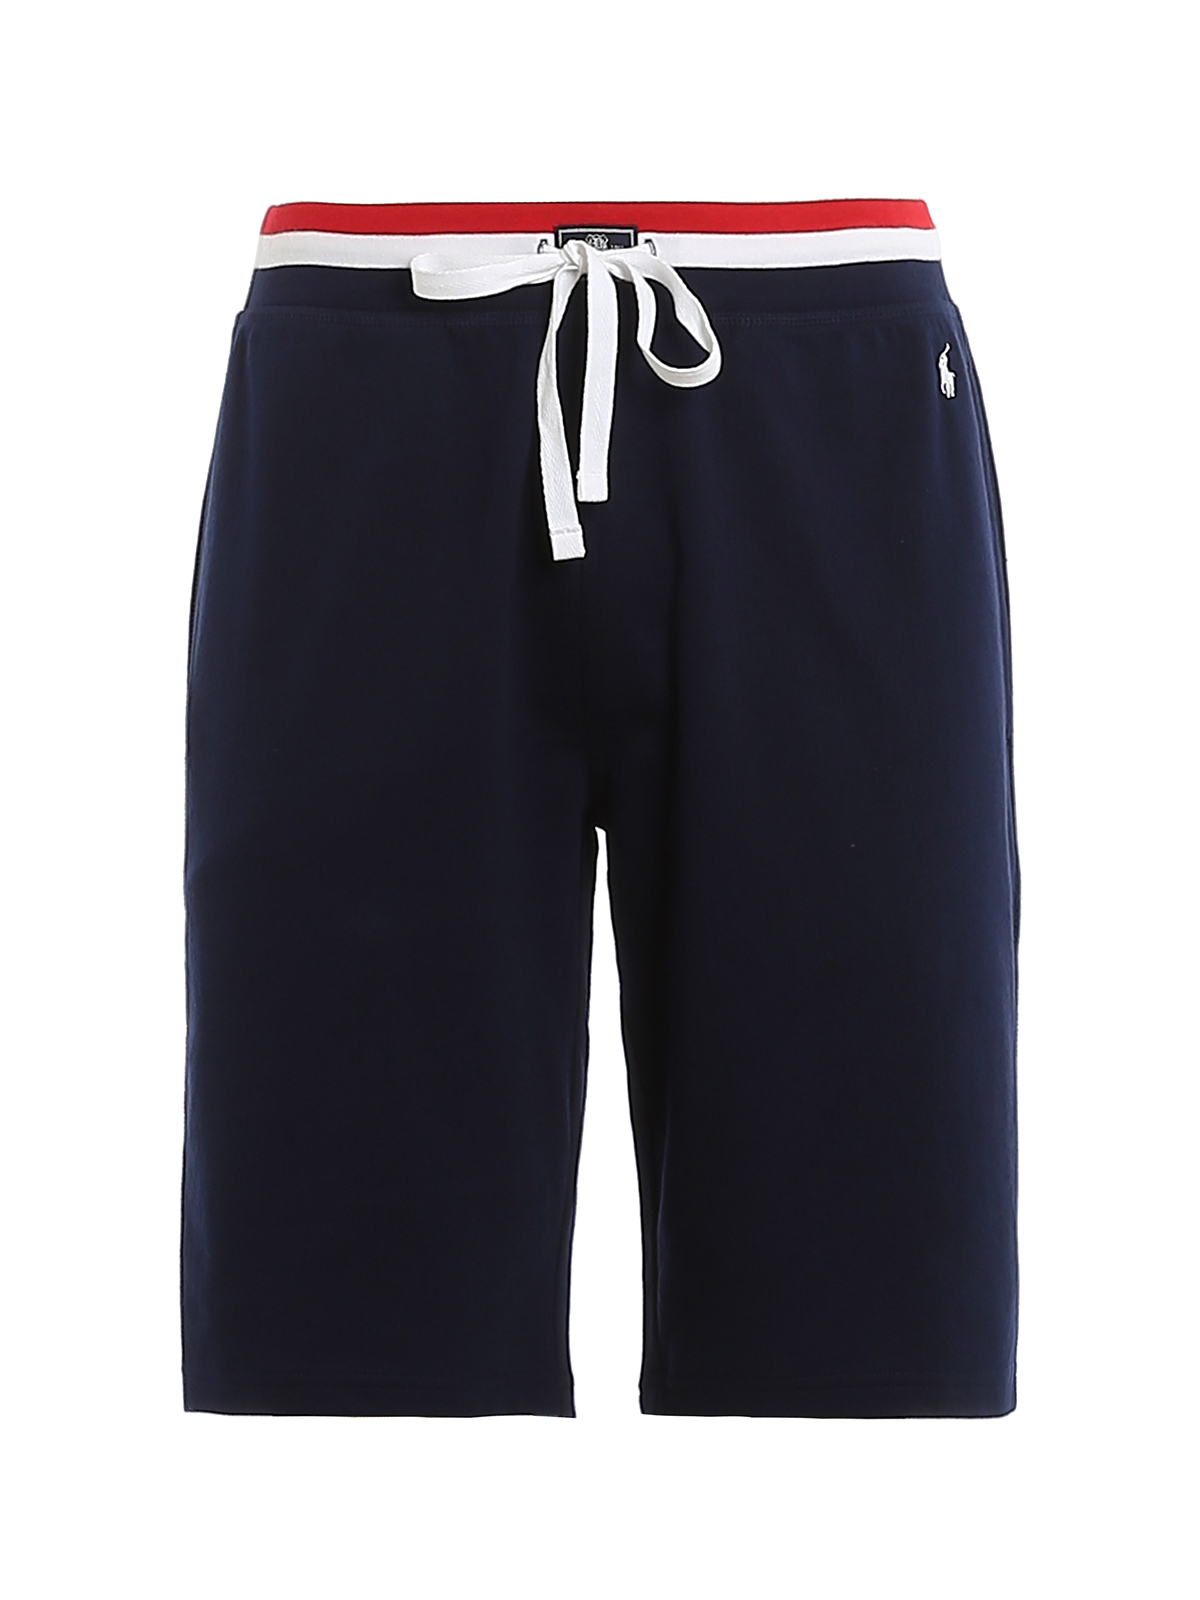 Trousers Shorts Polo Ralph Lauren - Cotton short trousers - 714687593006